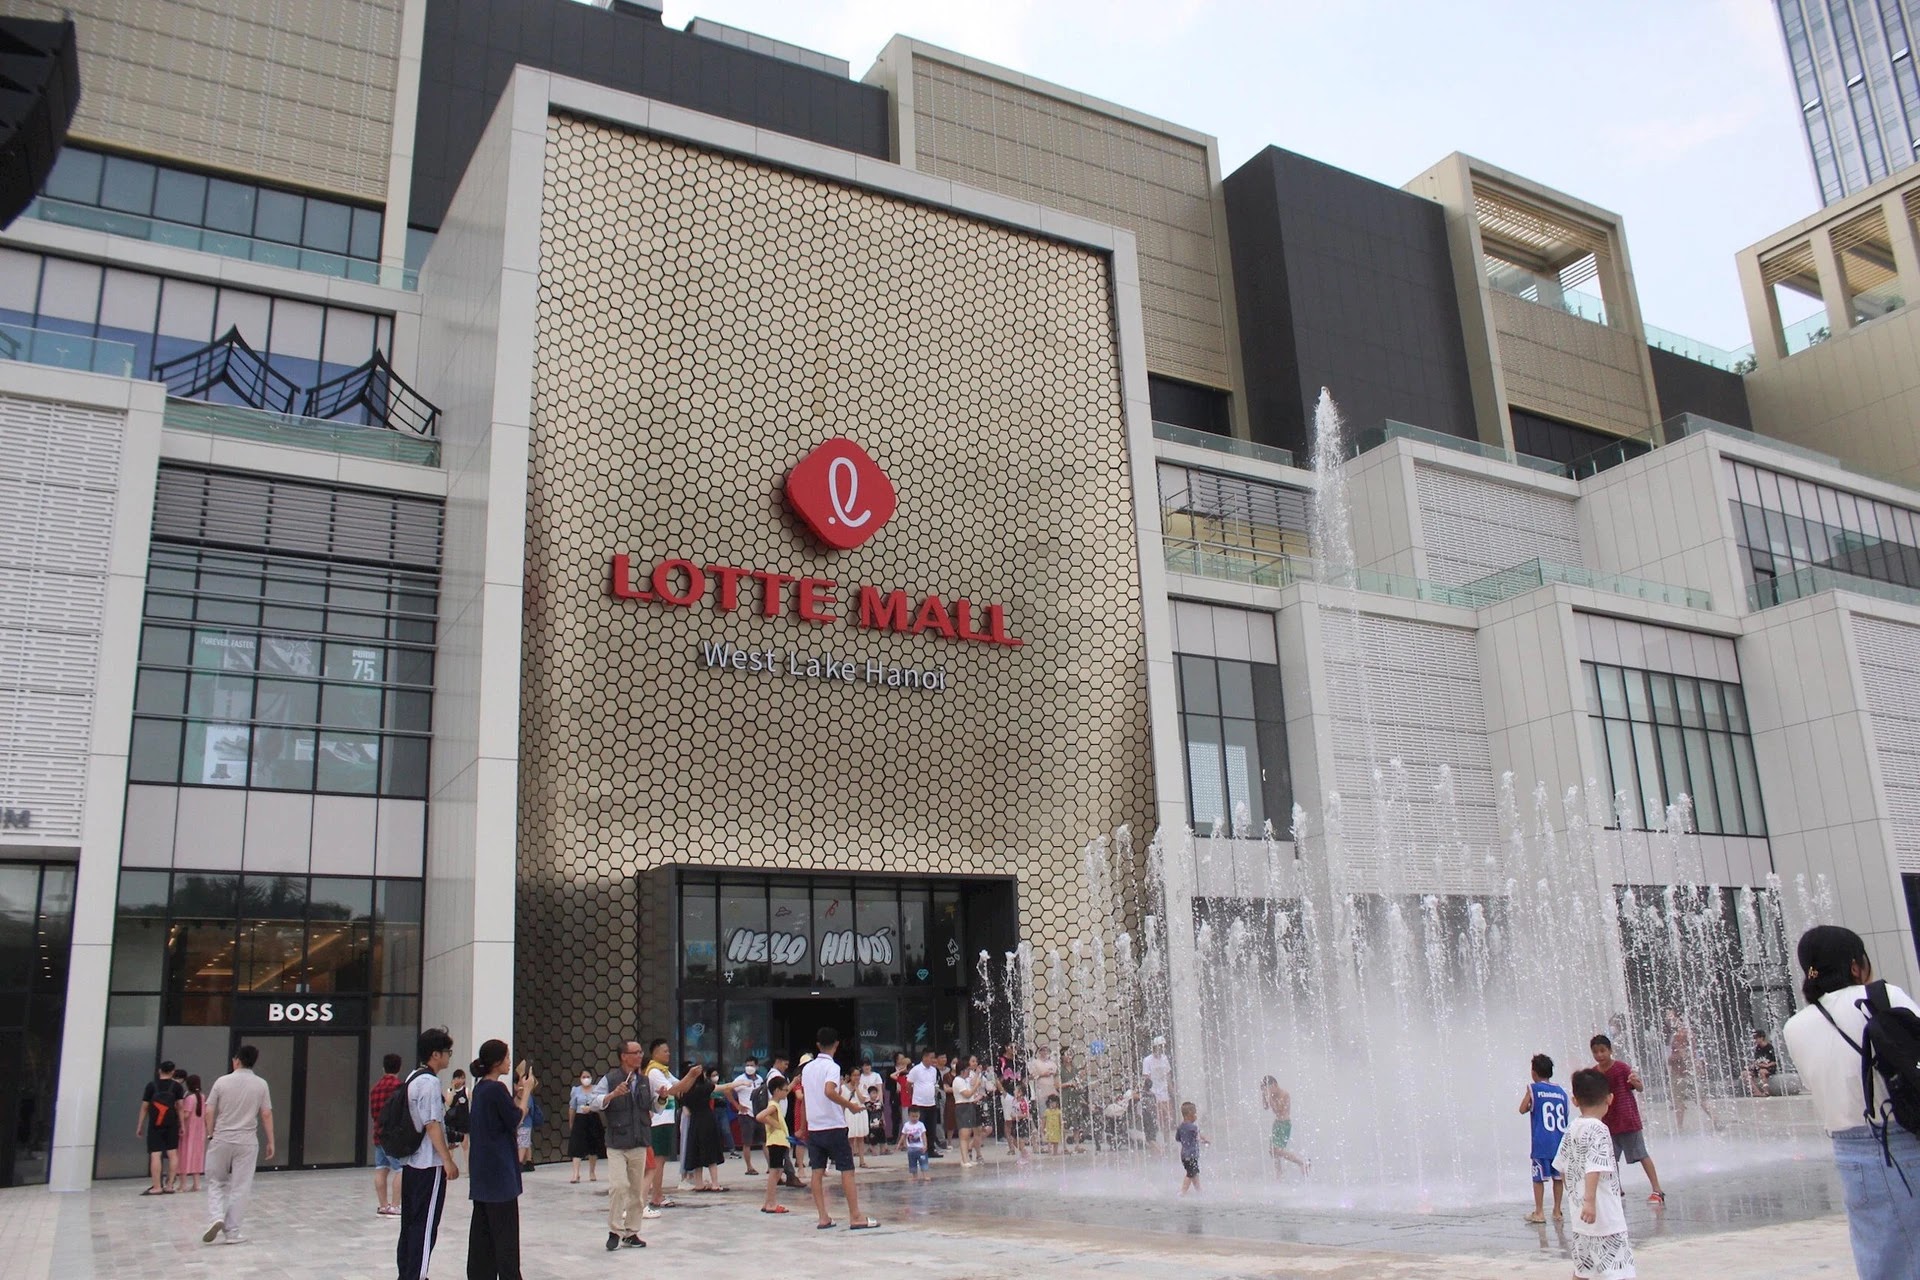 Cập nhật Dự án Lotte Mall West Lake Hanoi, Thủy cung Lotte World, Rạp chiếu phim Lotte Cinema, Siêu thị TTTM Lotte Mart giá vé vào cửa